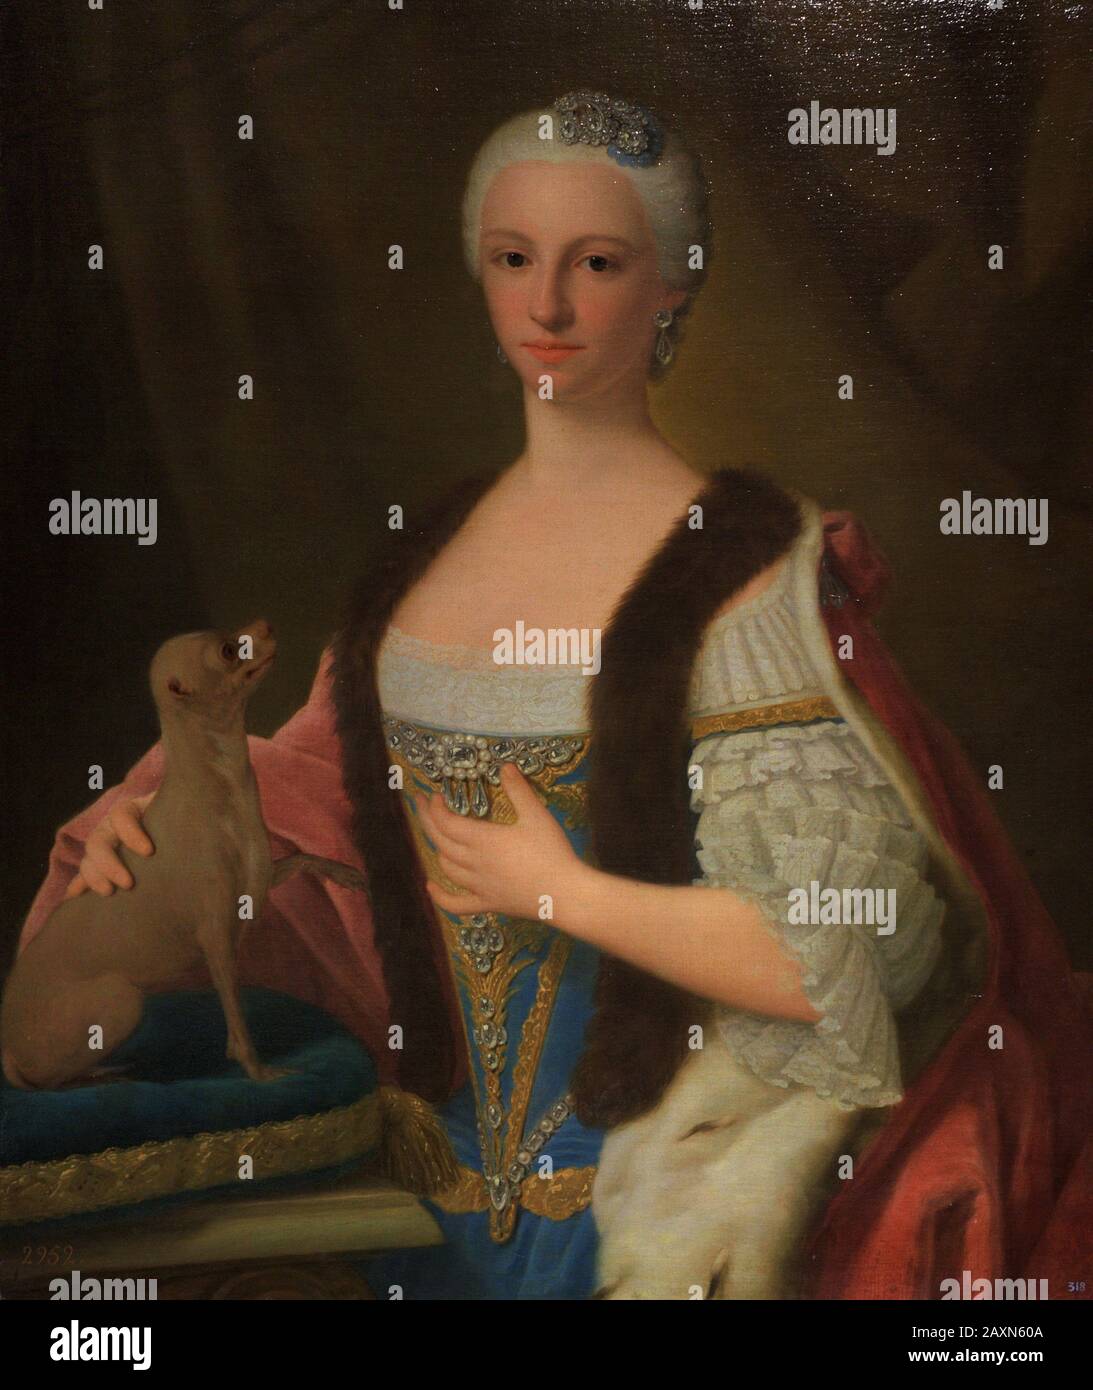 Maria Antonia Ferdinanda von Spanien (1729-171). Infanta von Spanien und Königin von Sardinien. Porträt von Domenico Dupraa (1689-1770), ca. 1757. Museum der Schönen Künste A Coruña, Galicien, Spanien. (Leihgabe, Prado Museum, Madrid). Stockfoto